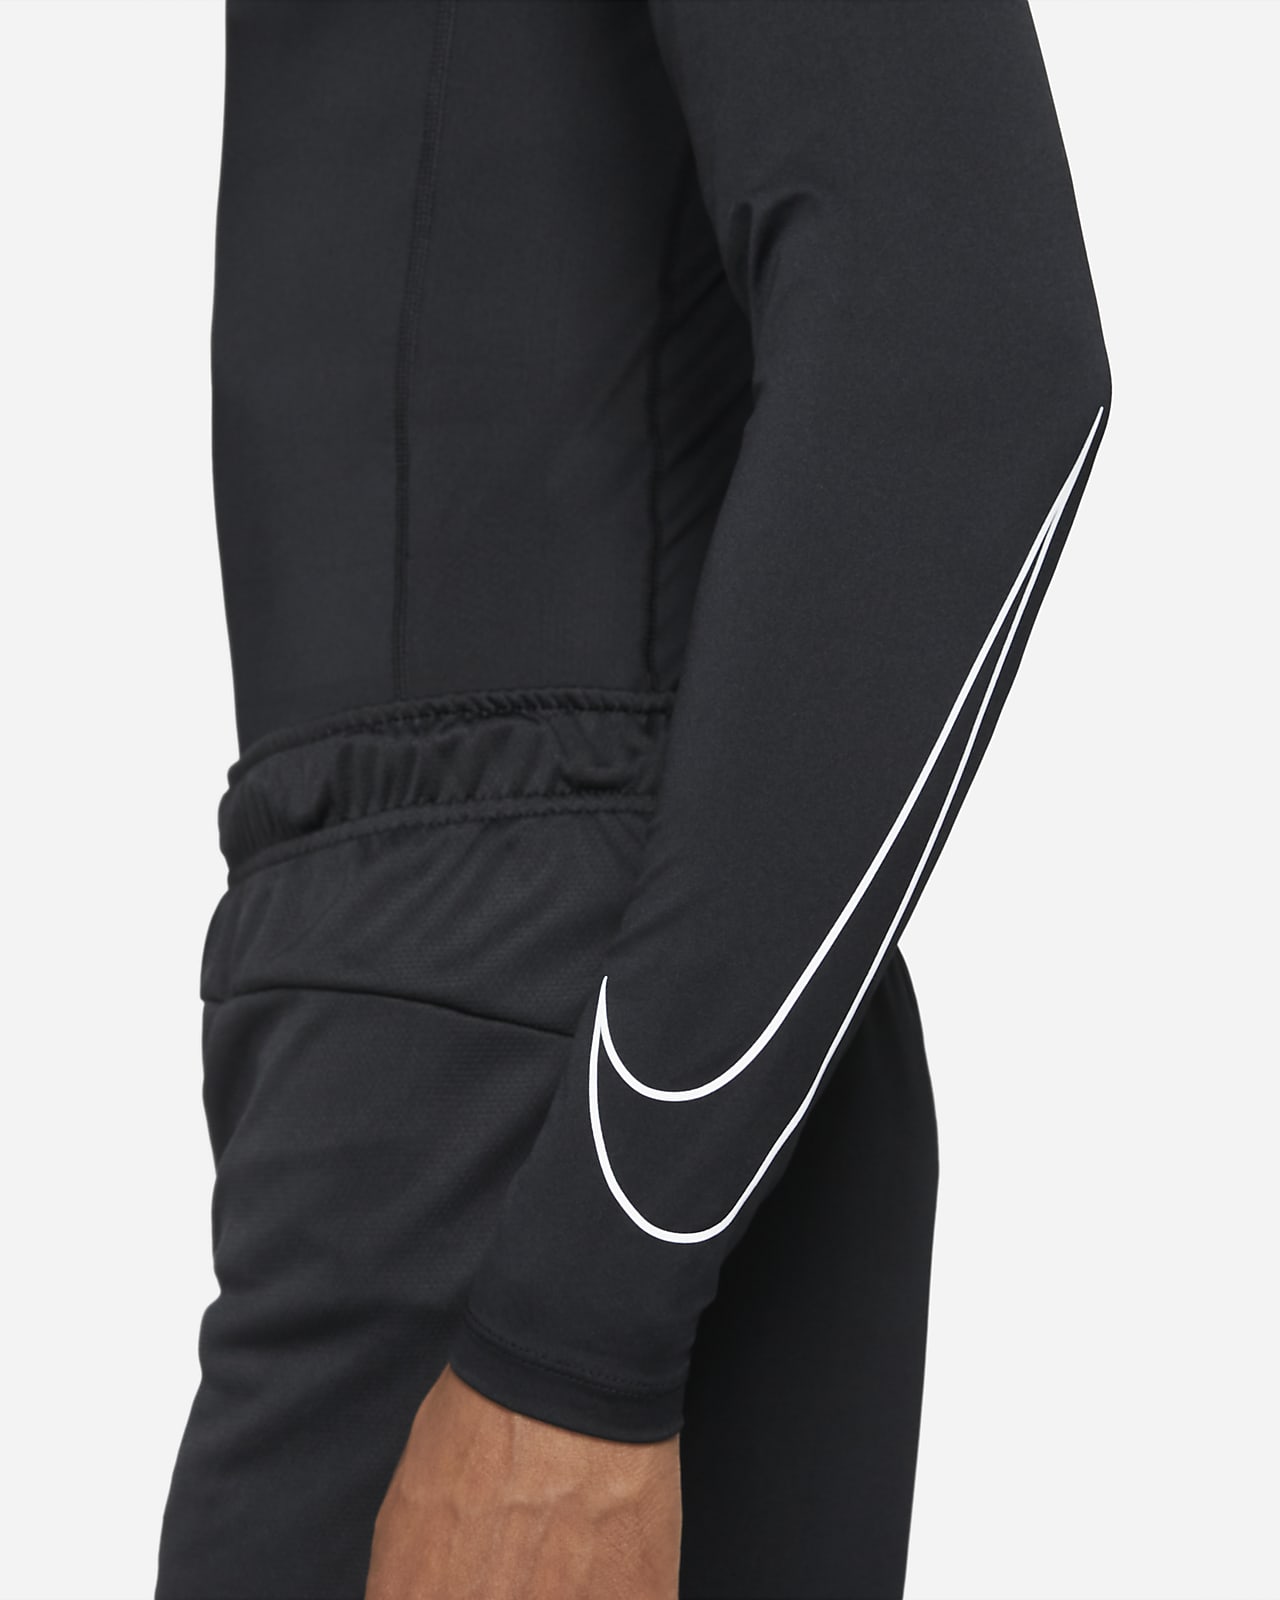 Nike Pro Tight Fit Long-Sleeve Nike.com